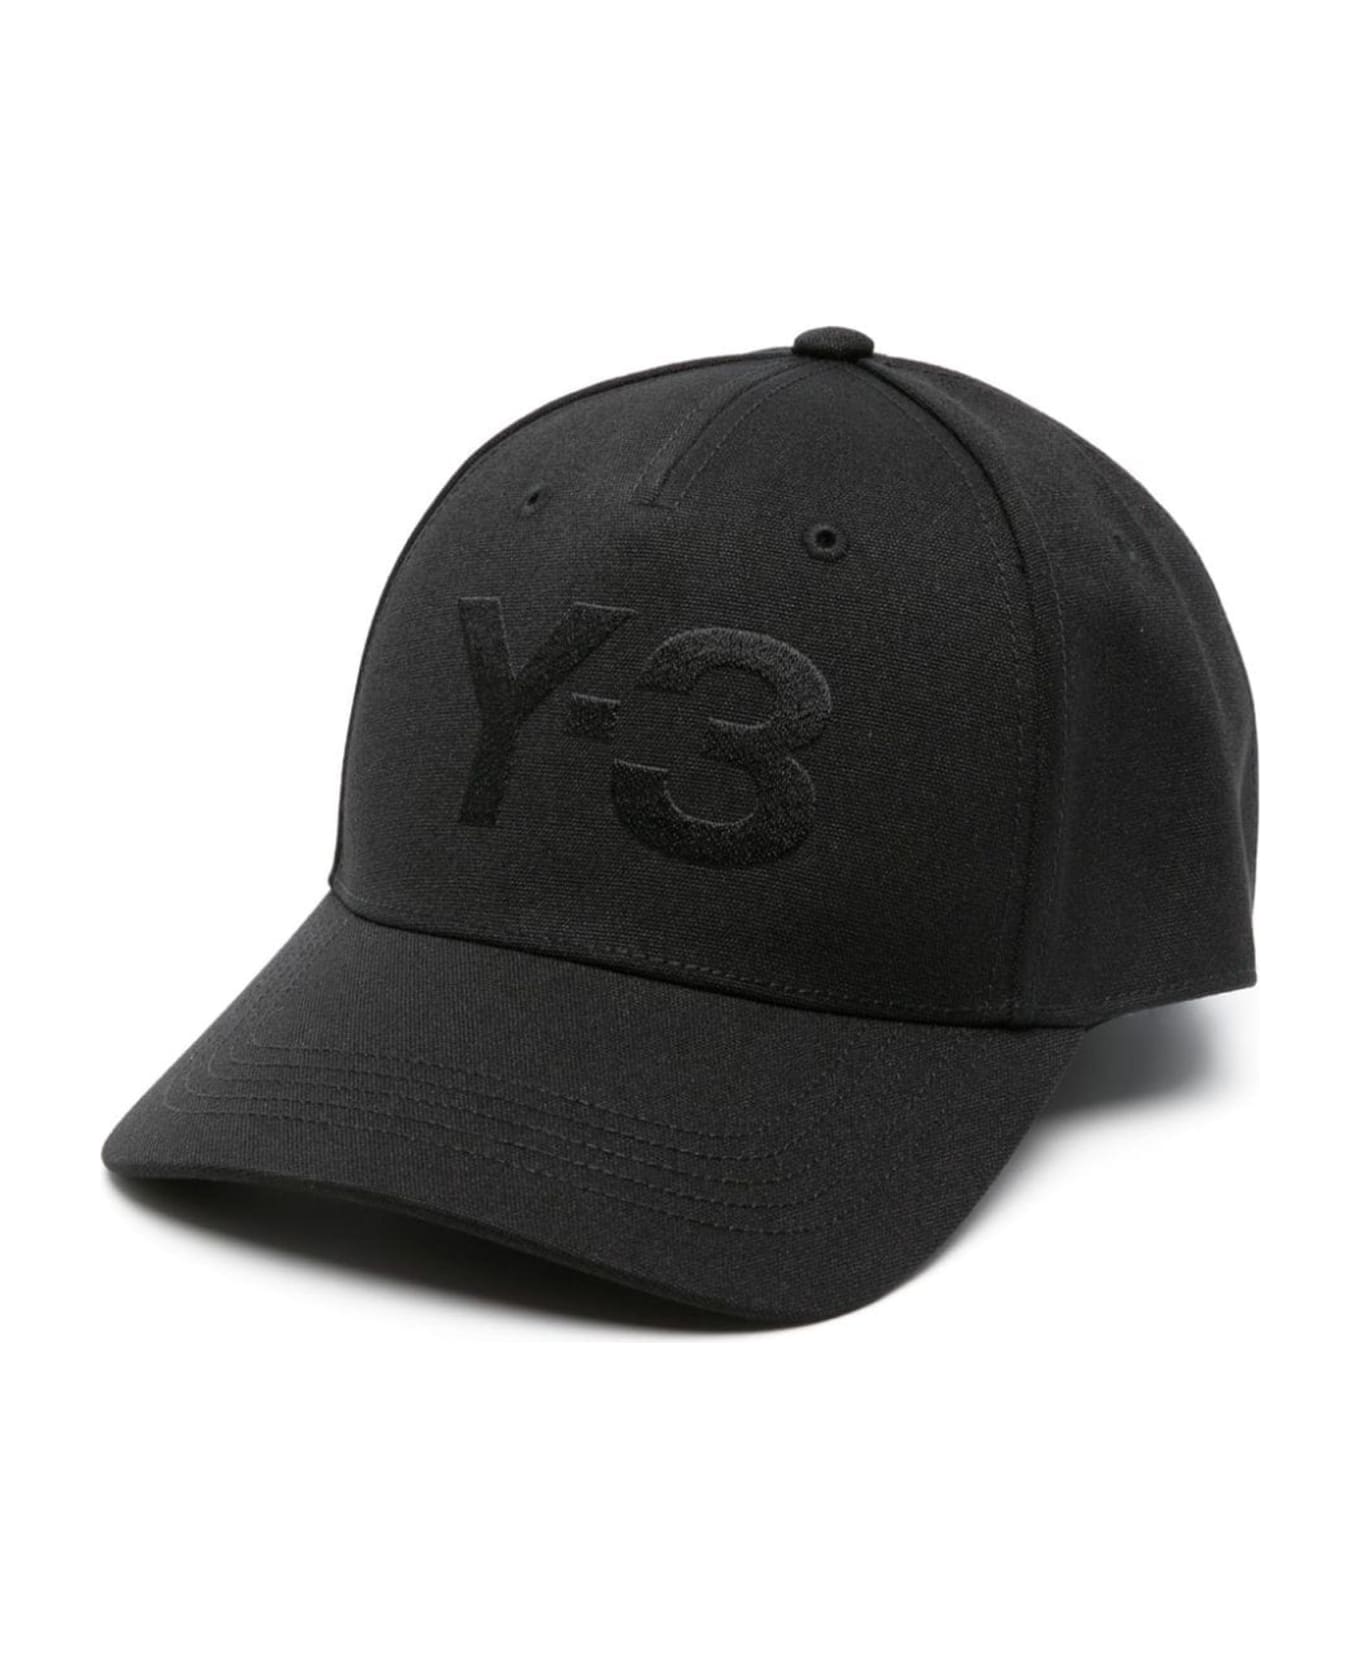 Y-3 Hats Black - Black